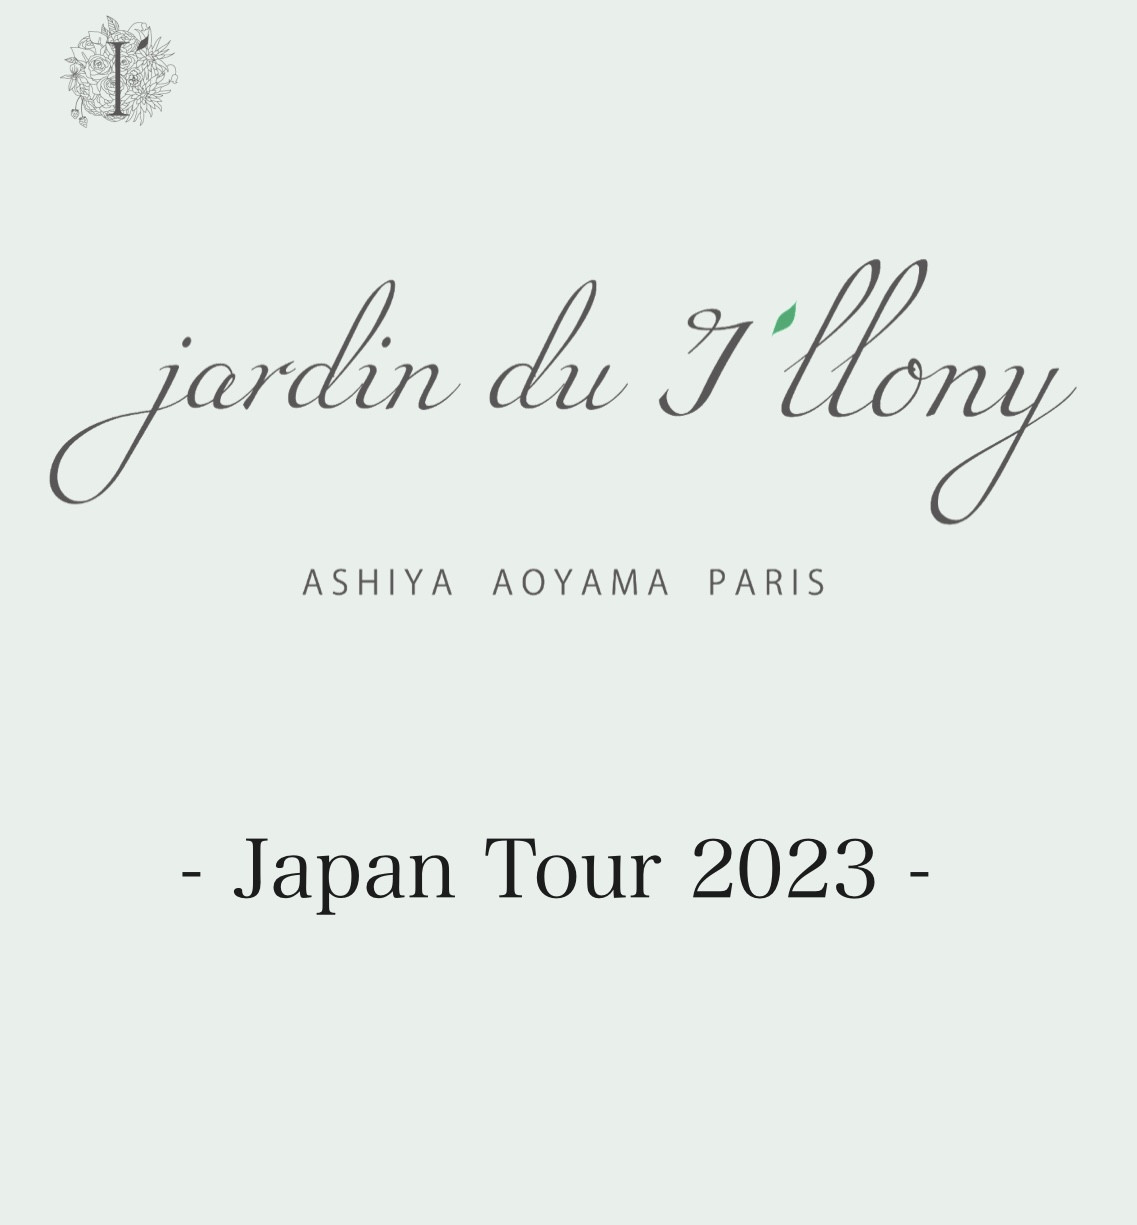 Japan Tour 2023 in Nara